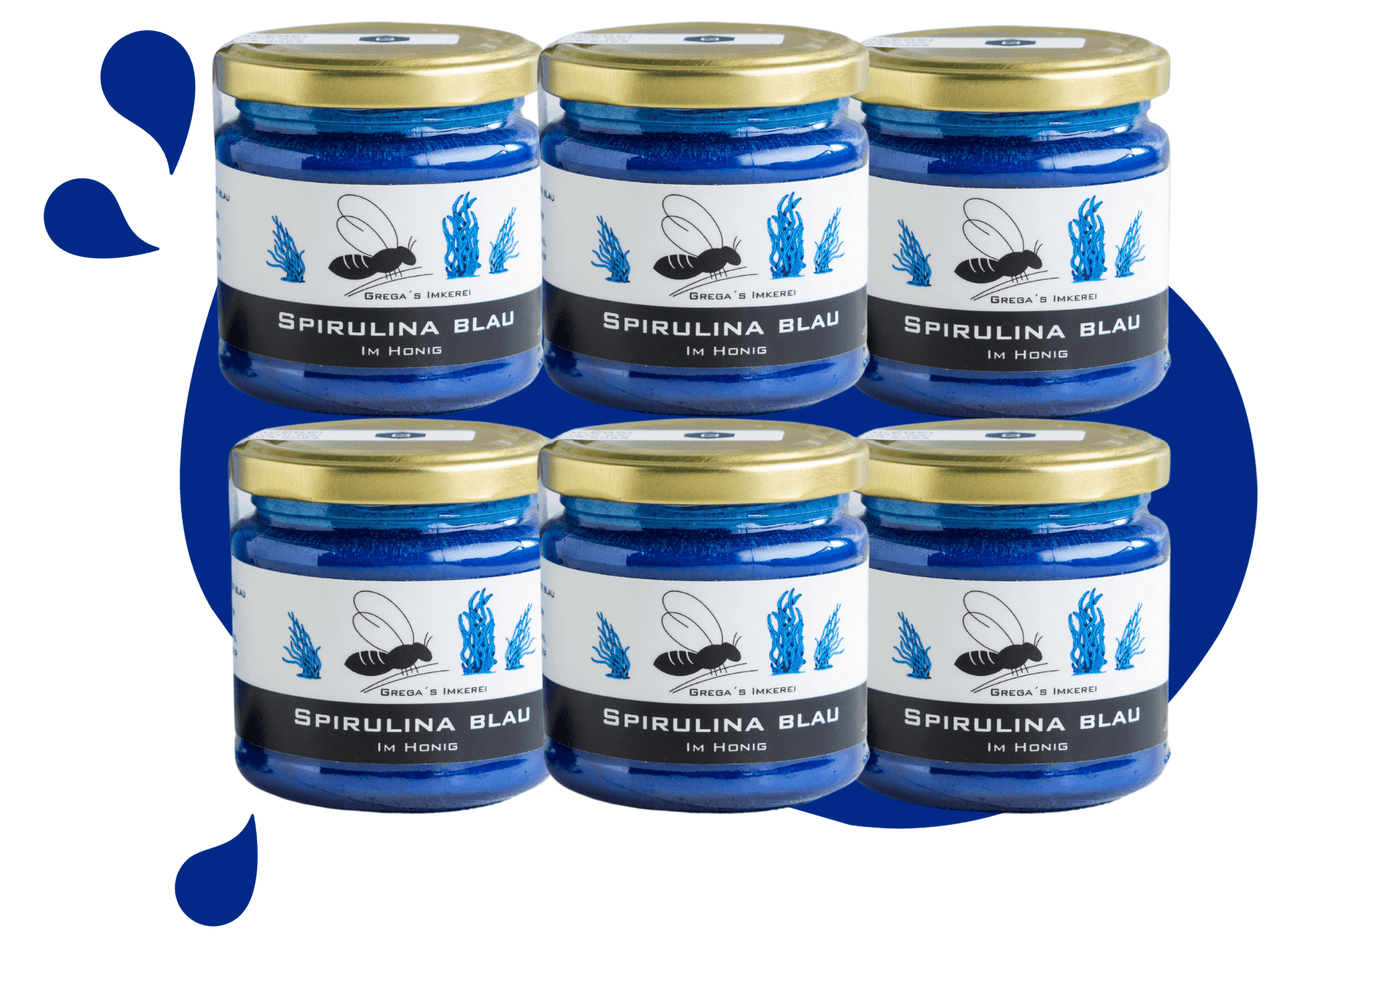 Spirulina Blau im Honig von Grega´s Imkerei 6er Vorteilsset